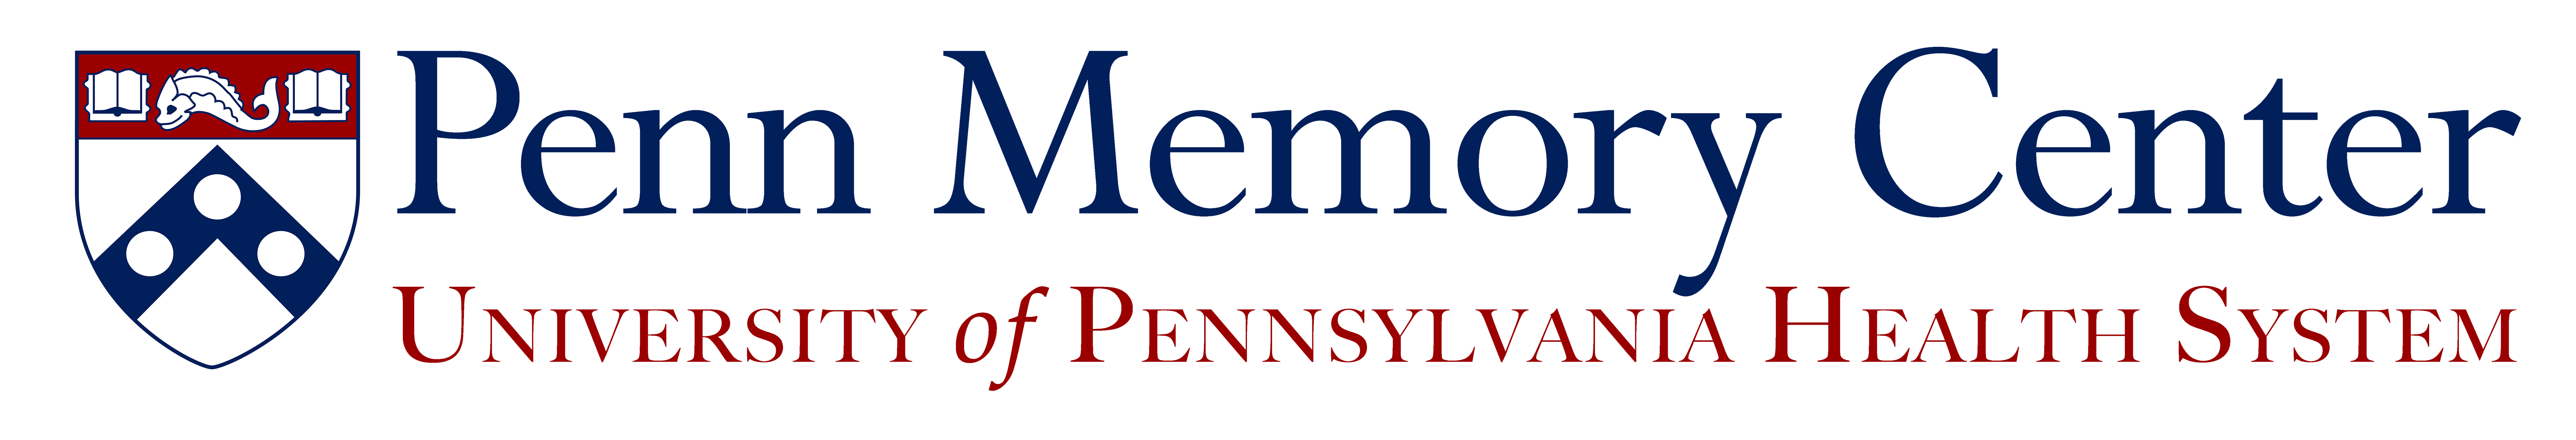 Penn Memory Care logo